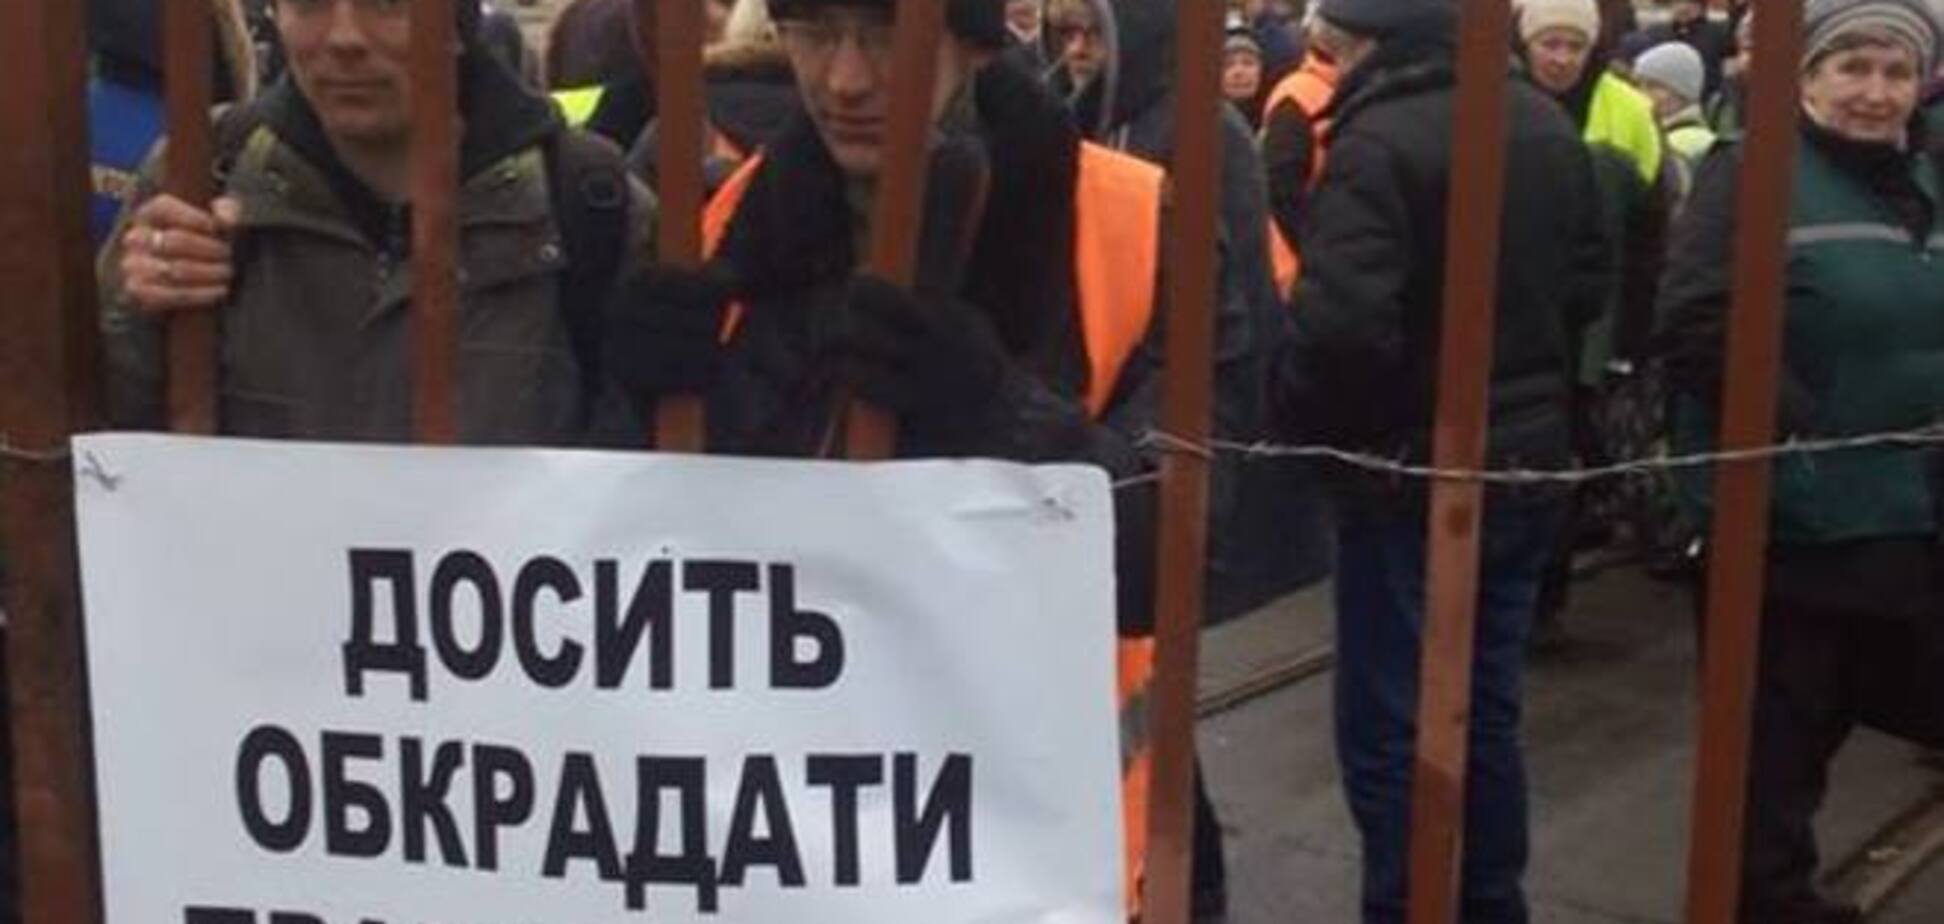 19 декабря в Киеве планируется забастовка водителей автобусов